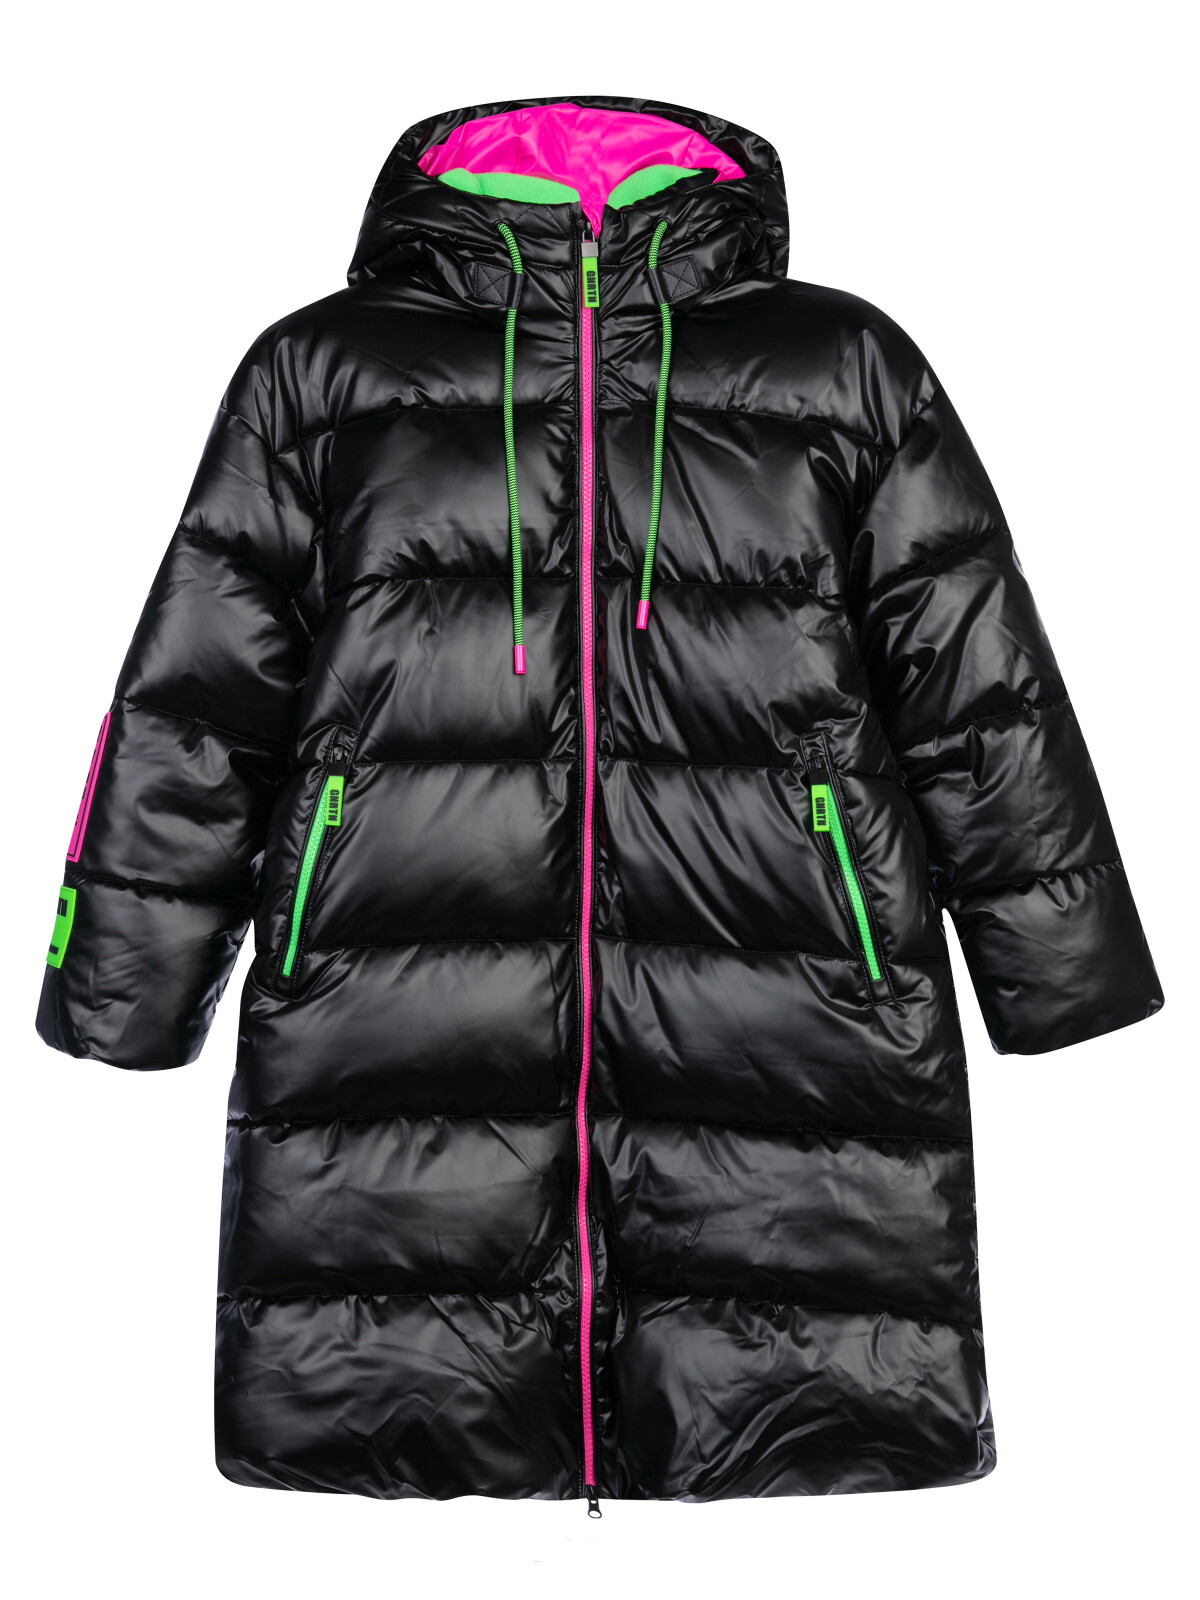 Пальто текстильное с полиуретановым покрытием для девочек PlayToday, черный,цветной, 134